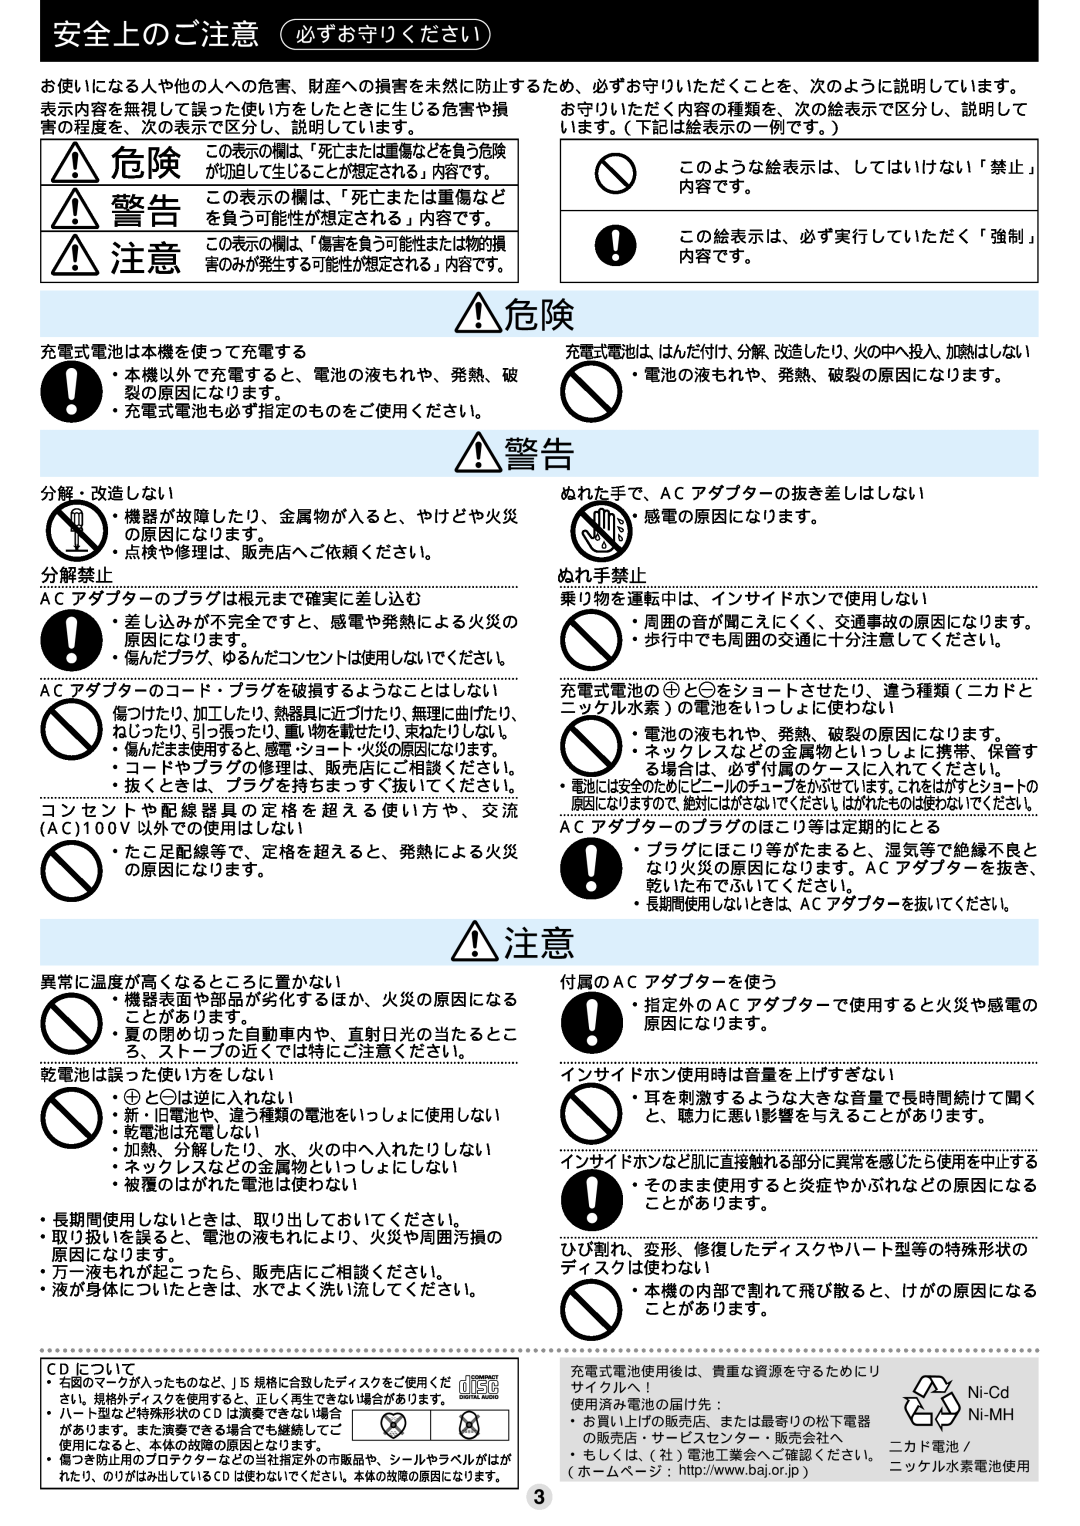 Sony SL-SV550 operating instructions 安全上のご注意 必ずお守りください, この表示の欄は、「死亡または重傷など, を負う可能性が想定される」内容です。, 分解禁止, ぬれ手禁止 